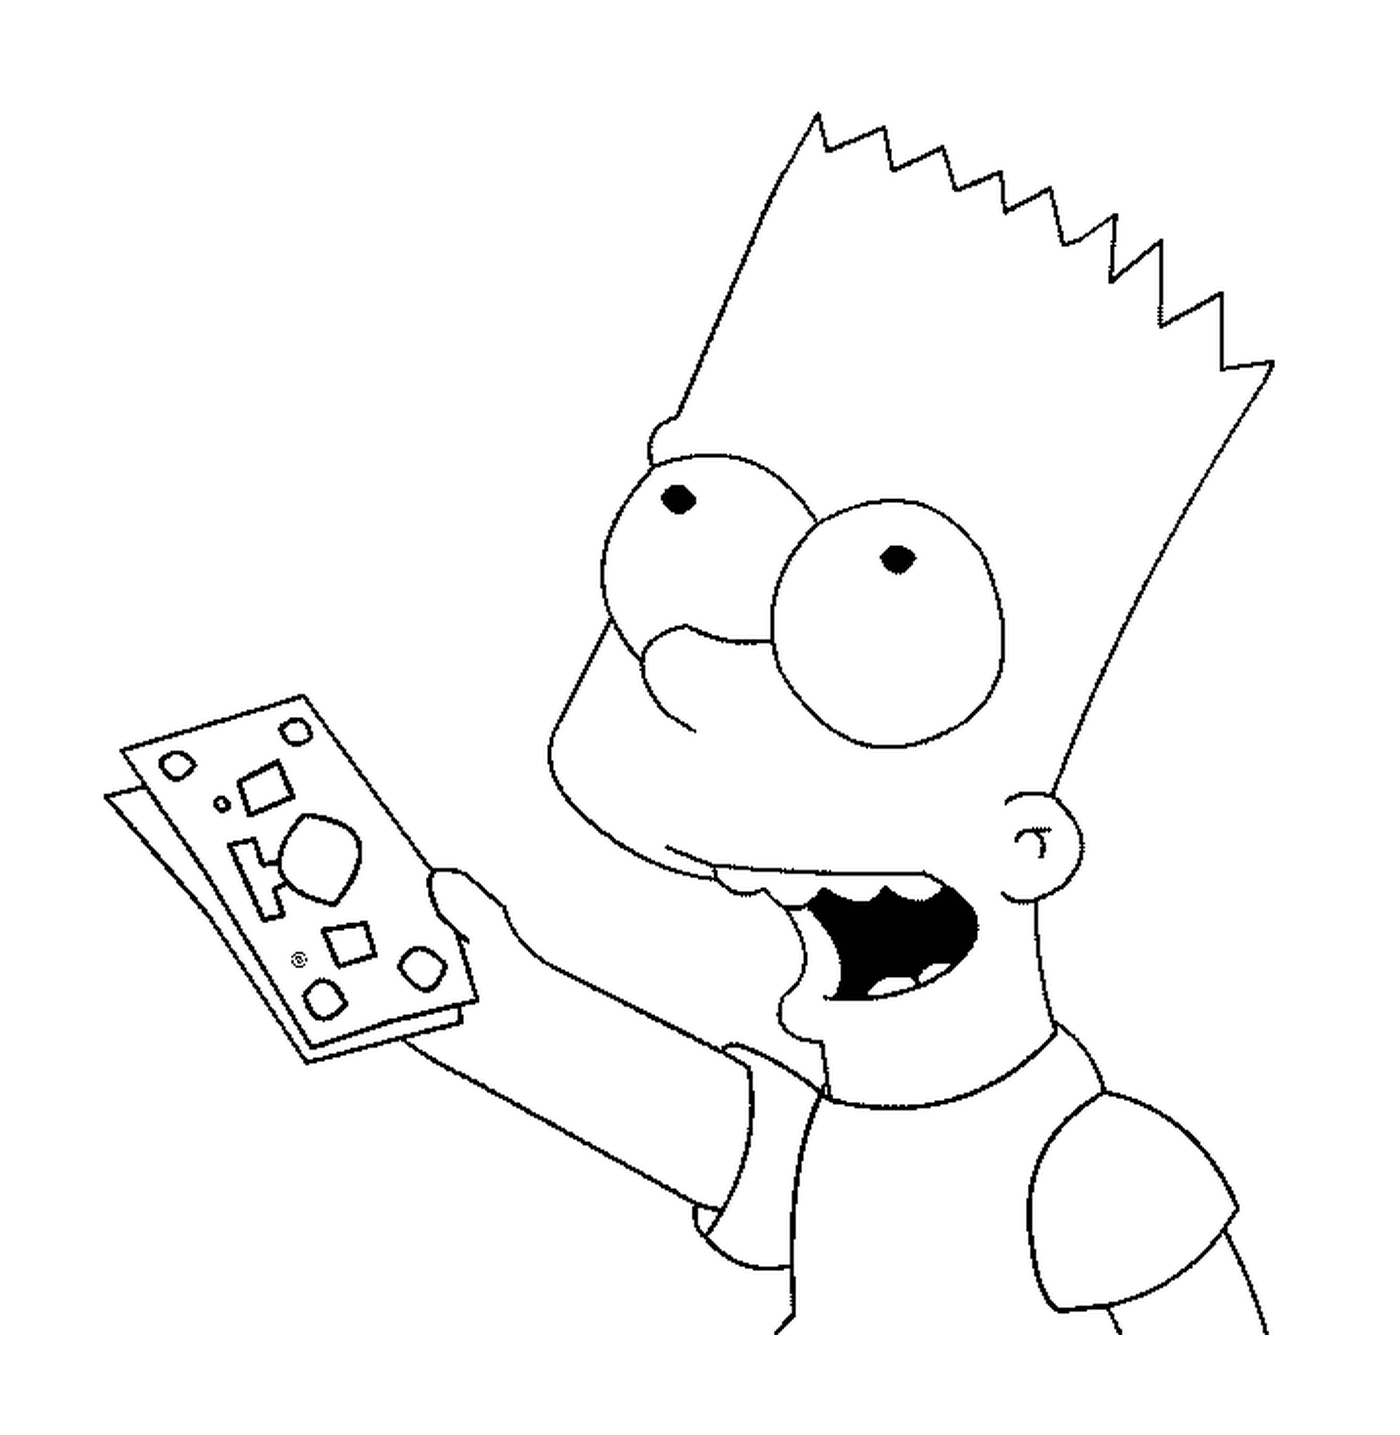  Bart tiene billetes de banco 